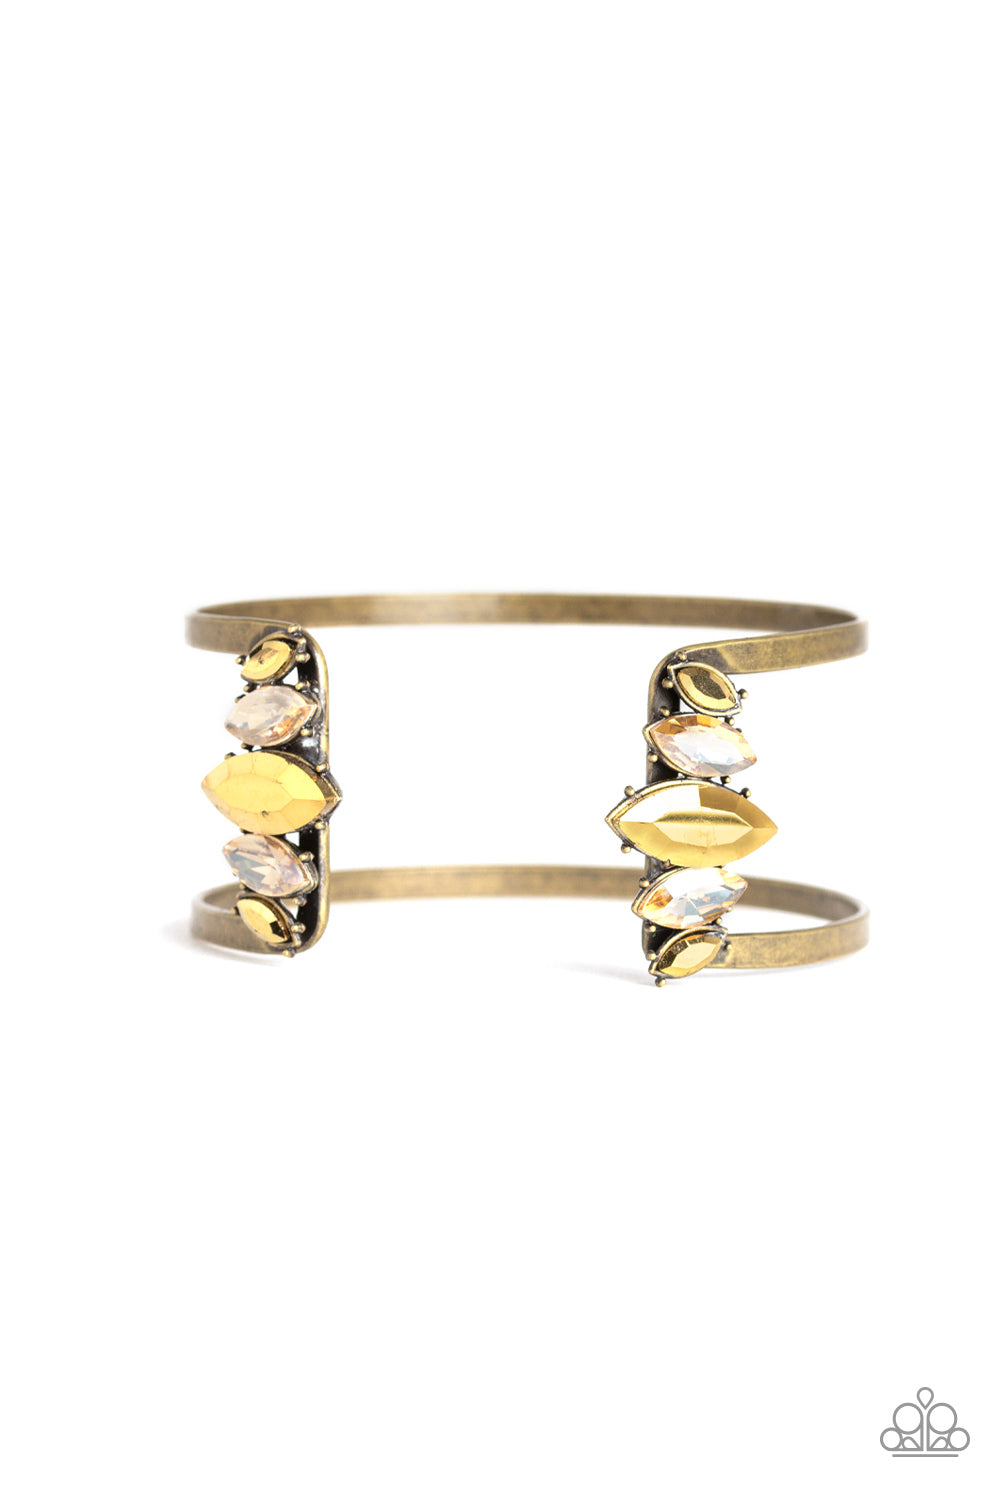 Glam Power Brass
Bracelet - Daria's Blings N Things